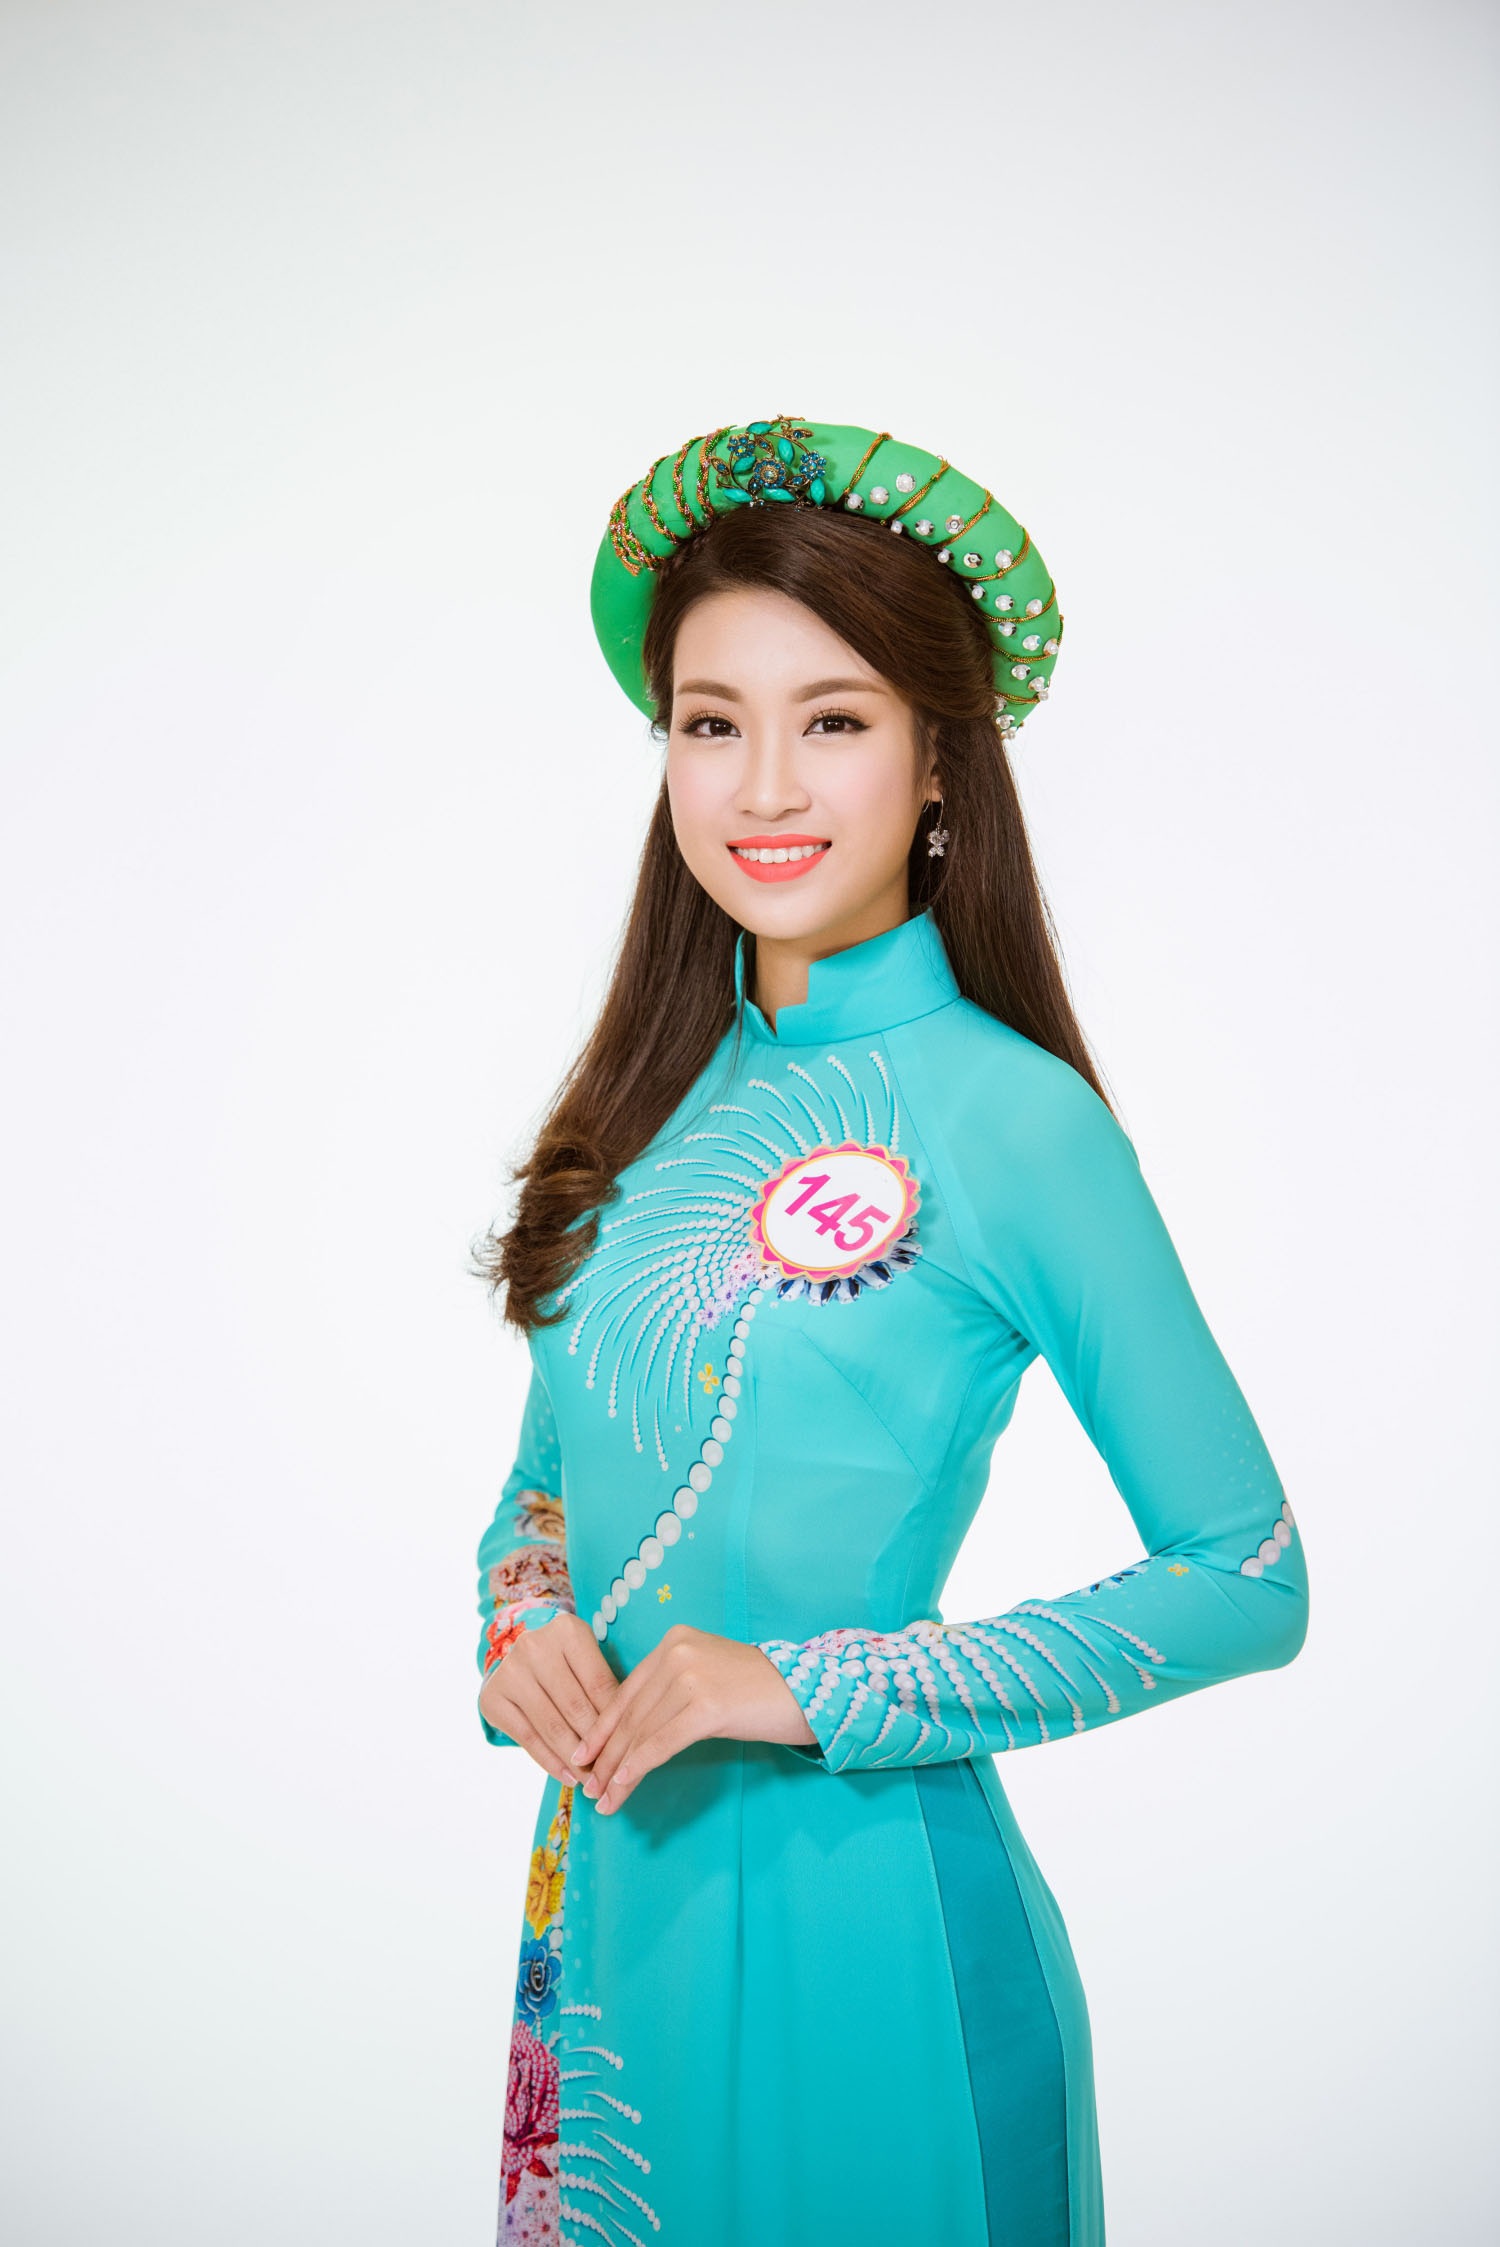 Đỗ Mỹ Linh cho biết, cô quyết định thu xếp việc học tập để dự thi Hoa hậu Việt Nam 2016 bởi với cô đây là một cuộc thi nhan sắc có bề dày lịch sử, được tổ chức chuyên nghiệp và đẳng cấp nhất Việt Nam hiện nay.